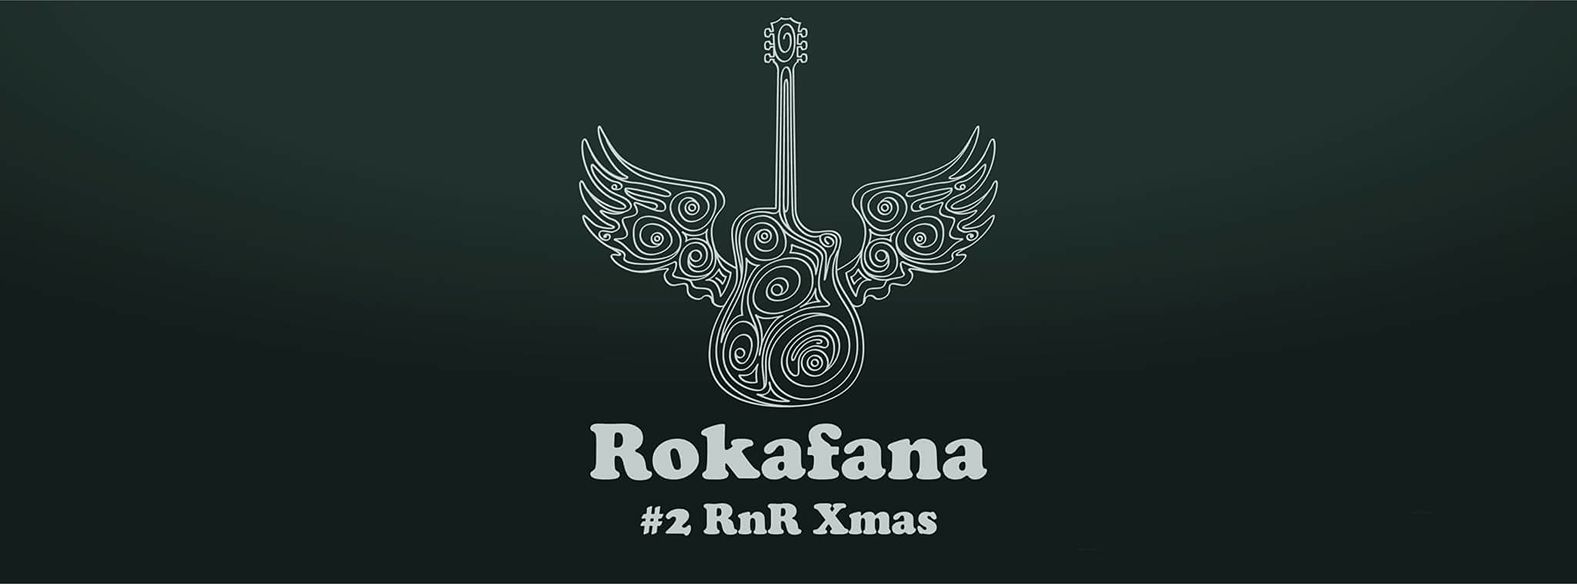 Rokafana #2 – RnR Xmas / 06.01.2018.  Klub Fest